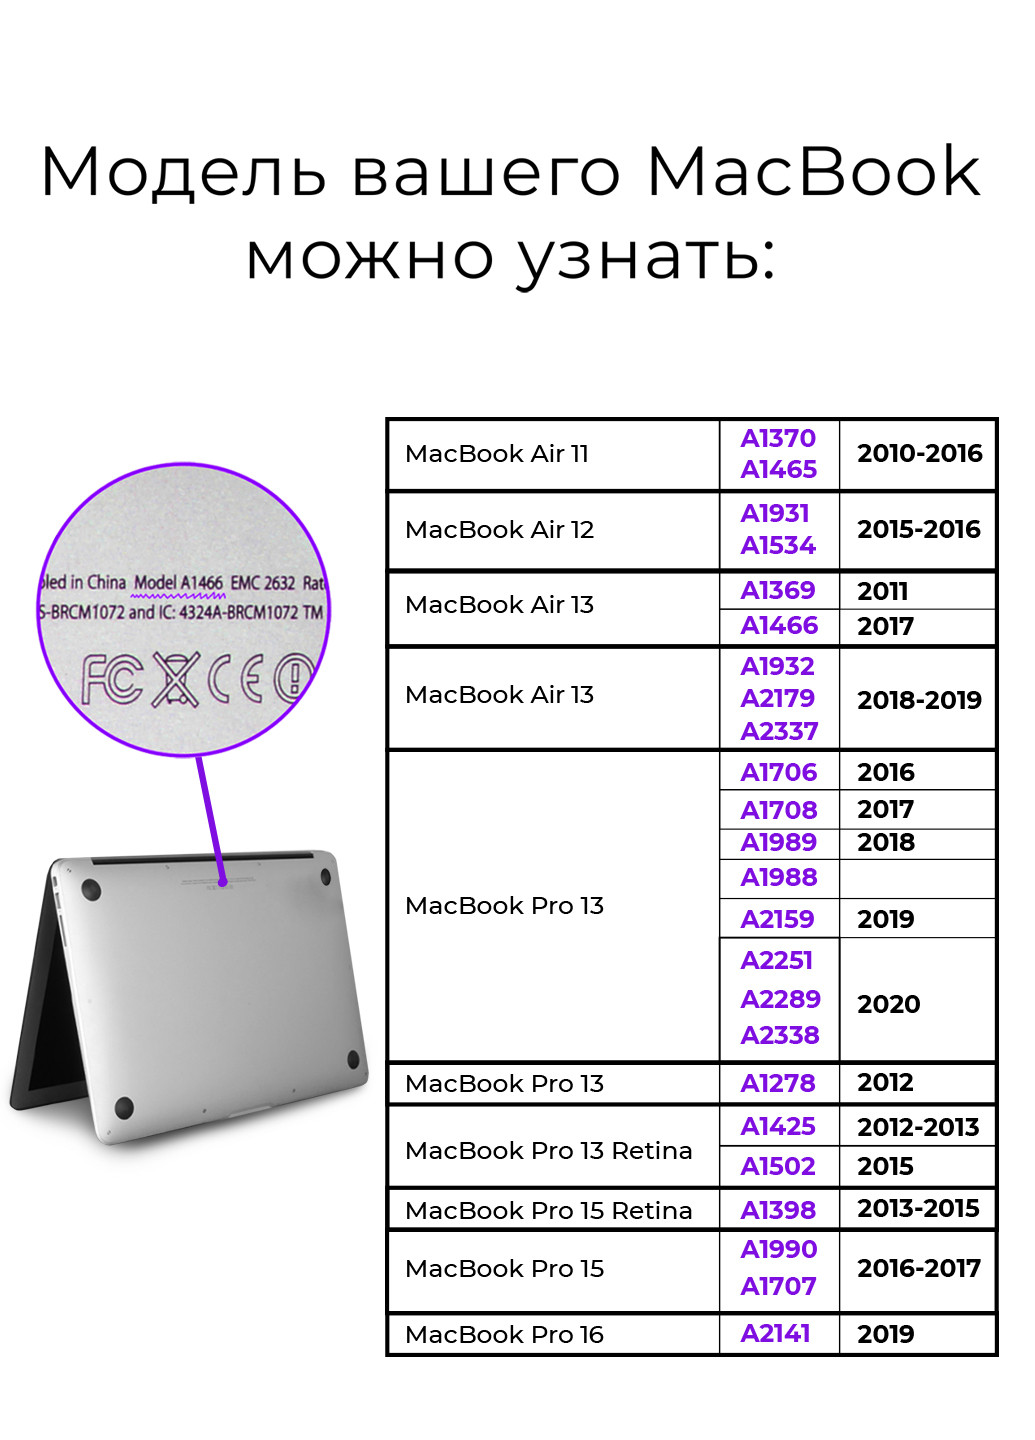 Чехол пластиковый для Apple MacBook Air 13 A1466 / A1369 Вселенная (Galaxy) (6351-2741) MobiPrint (219123843)